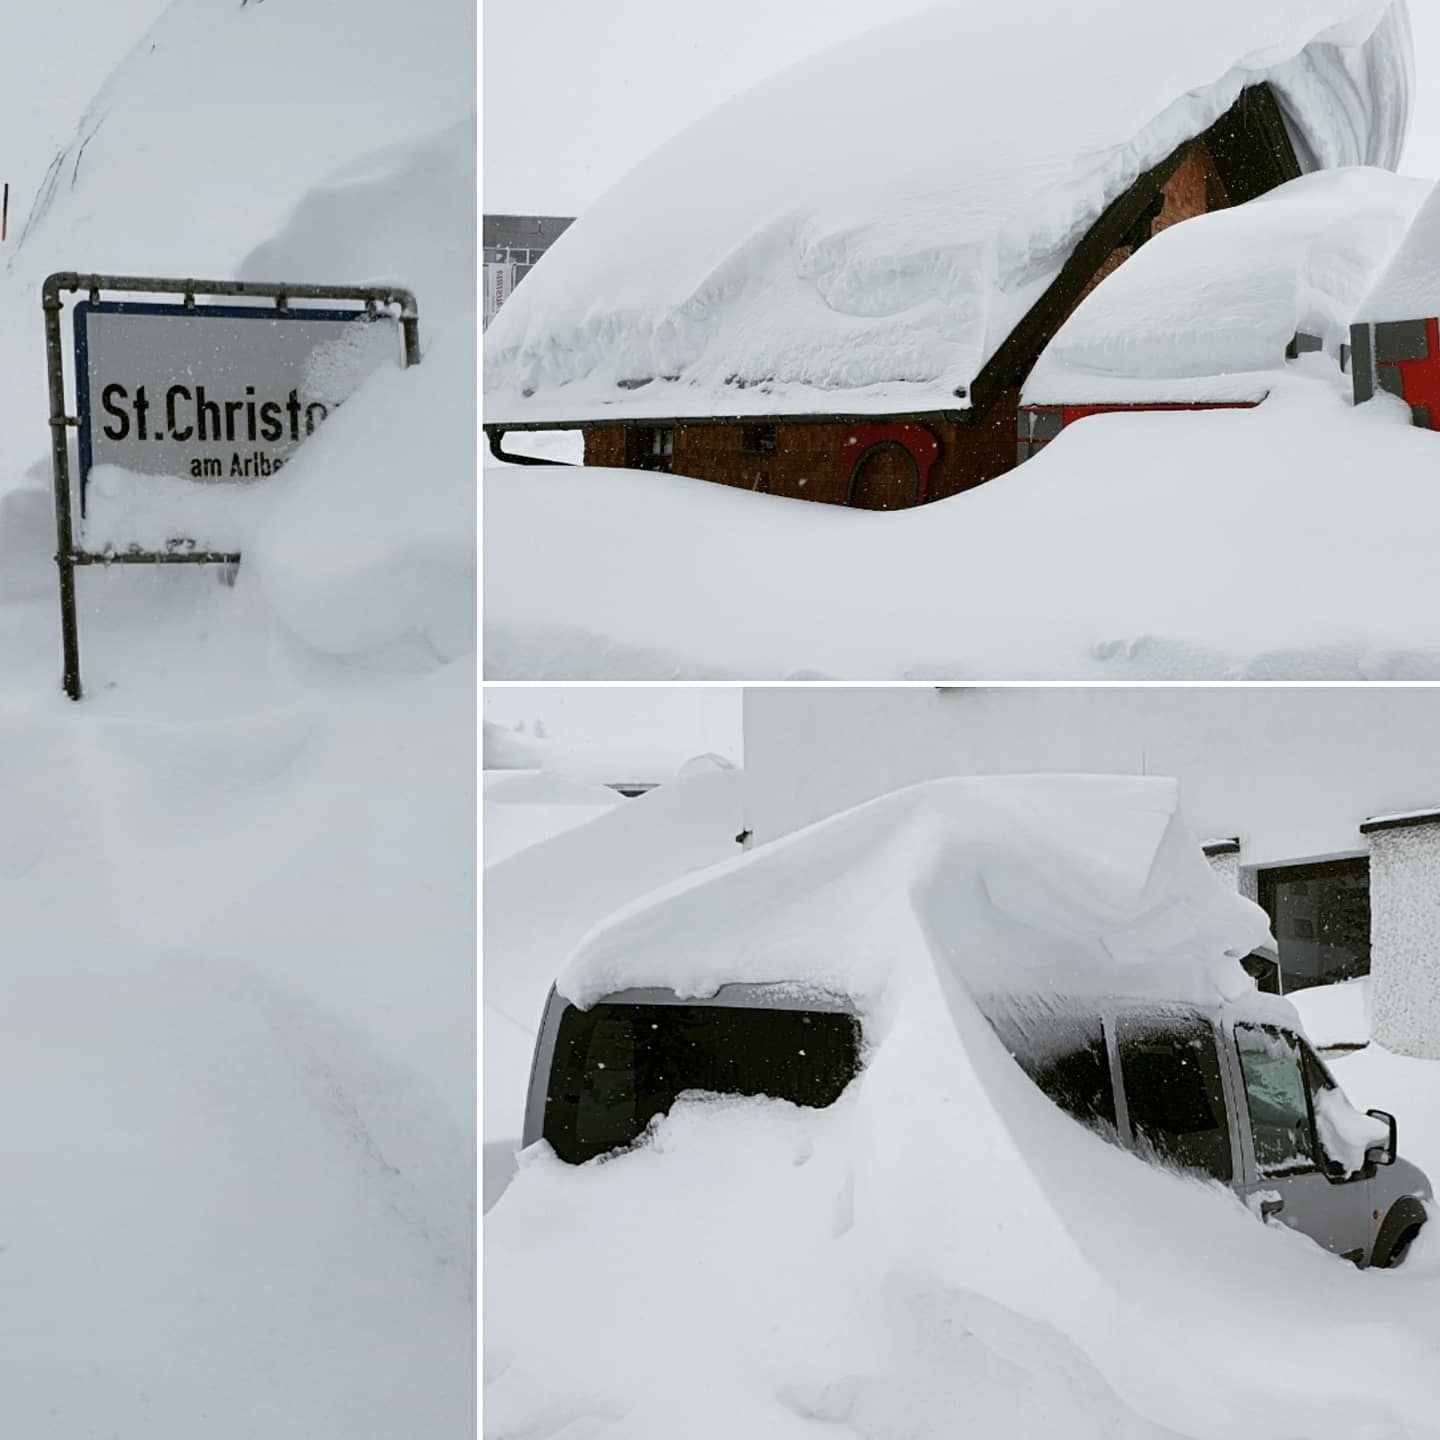 Lots of snow for the Arlberg region (FB St. Anton am Arlberg)